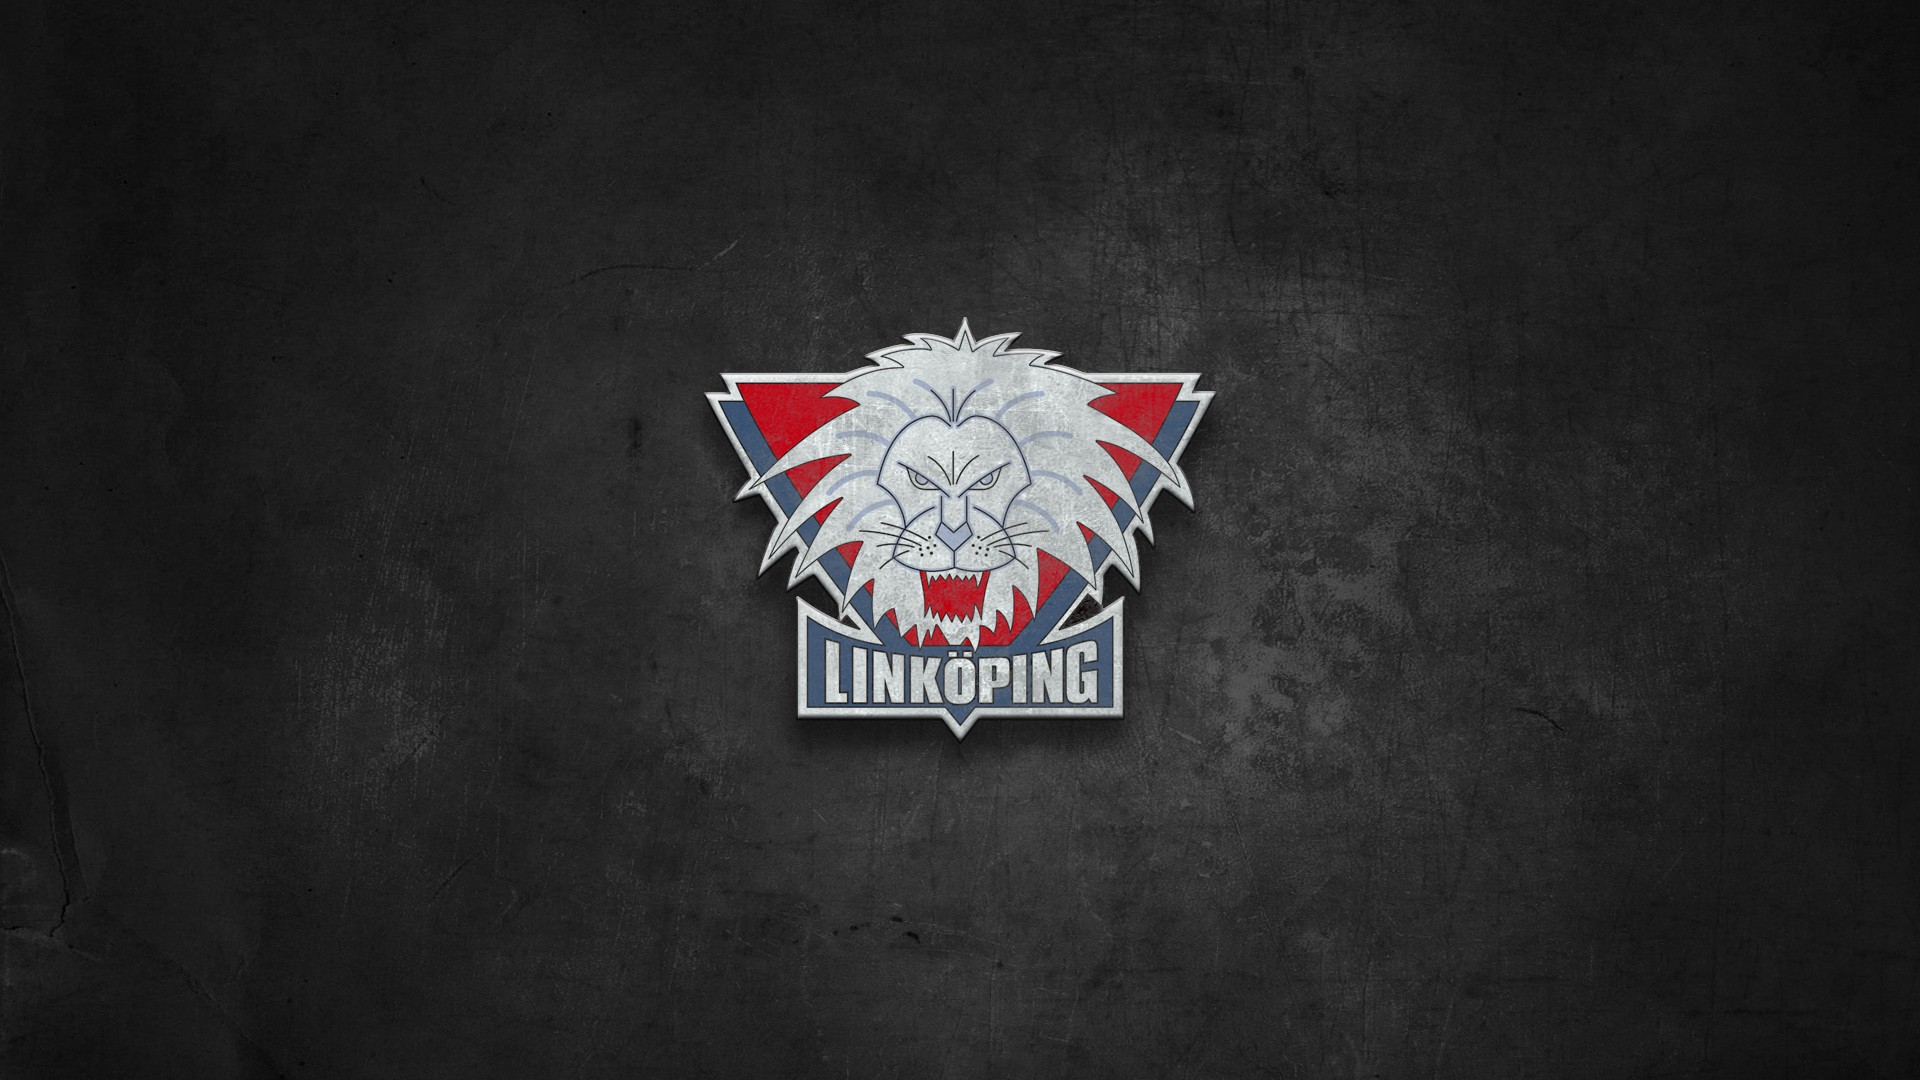 General 1920x1080 LHC Linköping Hockey SHL logo sport dark background